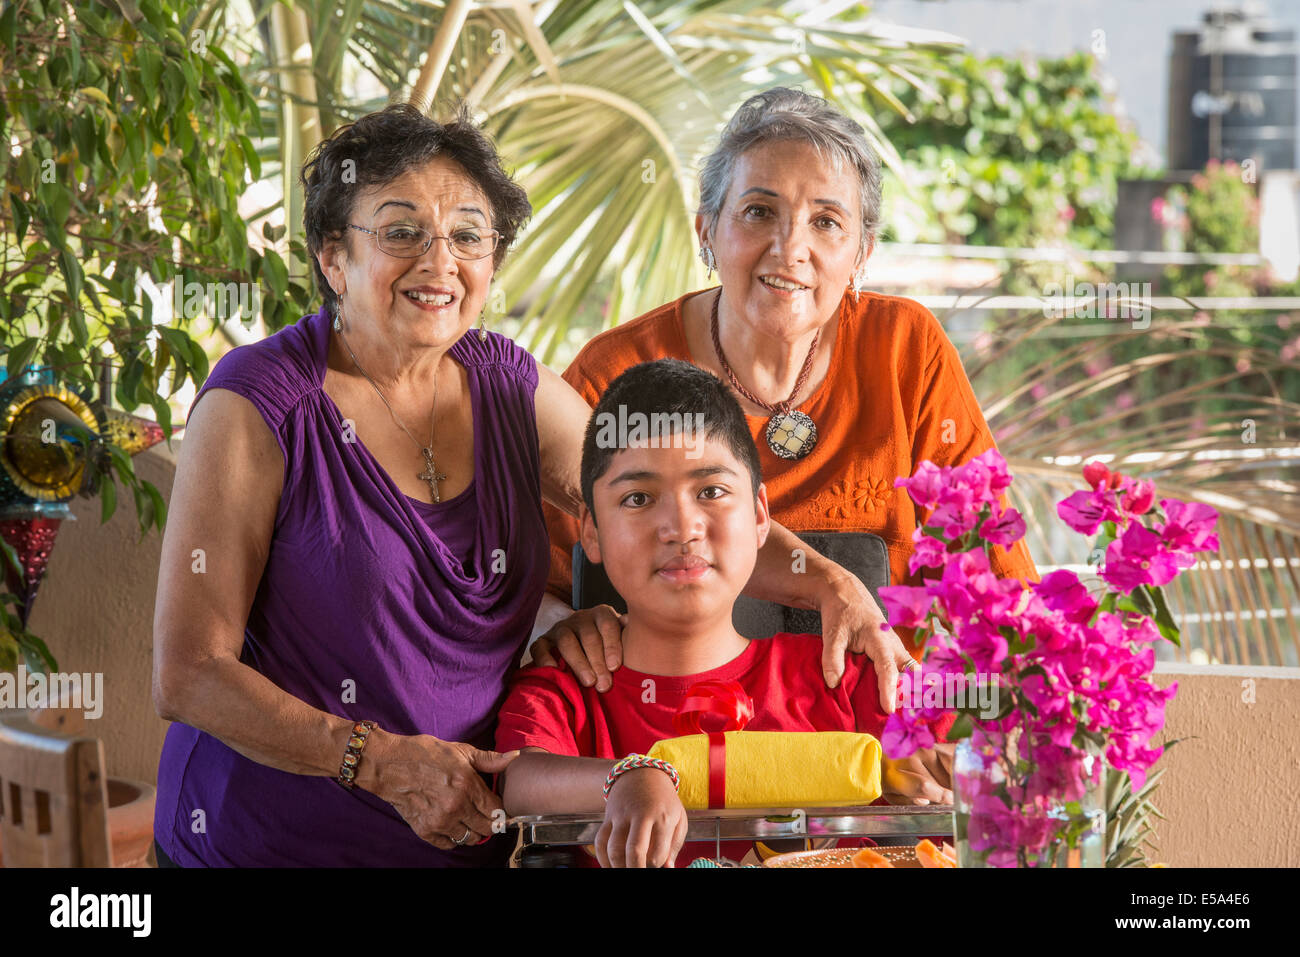 Hispanische Familie lächelnd zusammen Stockfoto